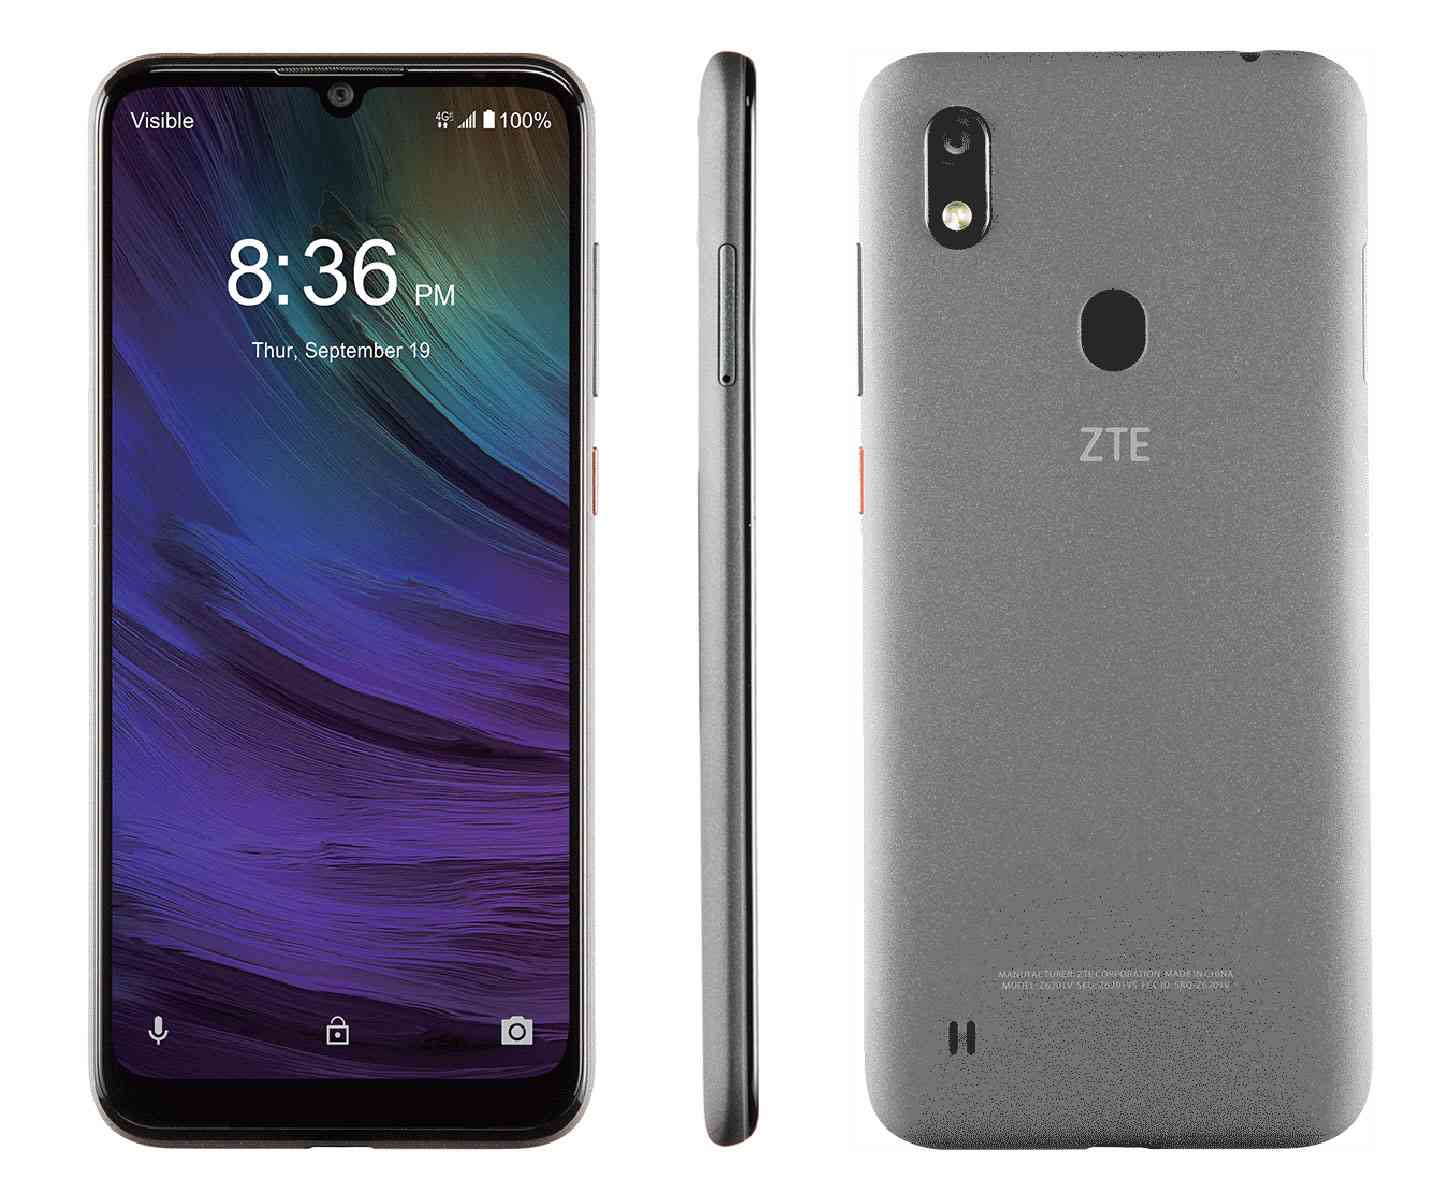 ZTE Blade A7 Prime smarttelefonanmeldelse med hovedfunksjoner